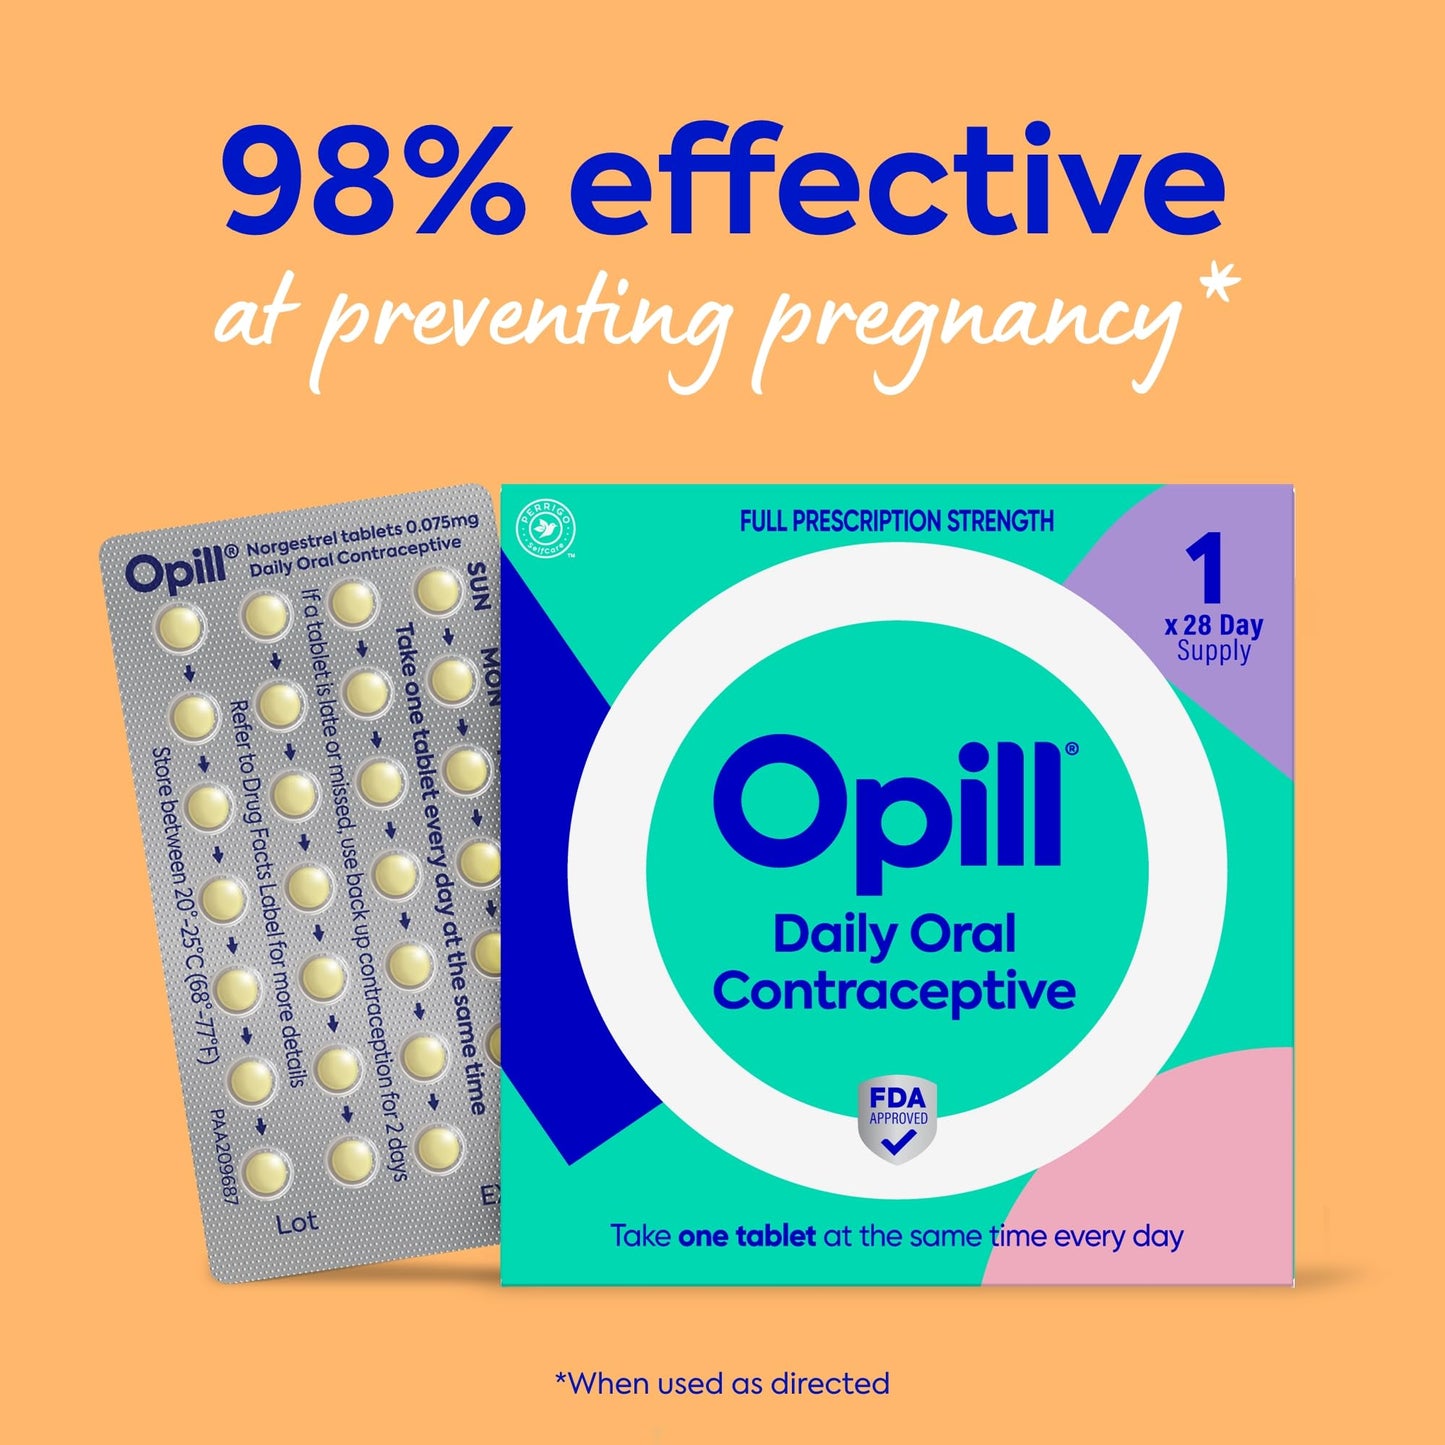 Opill Daily Oral Contraceptive, Birth Control Pill, Full Prescription Strength, No Prescription Needed, 84 Count